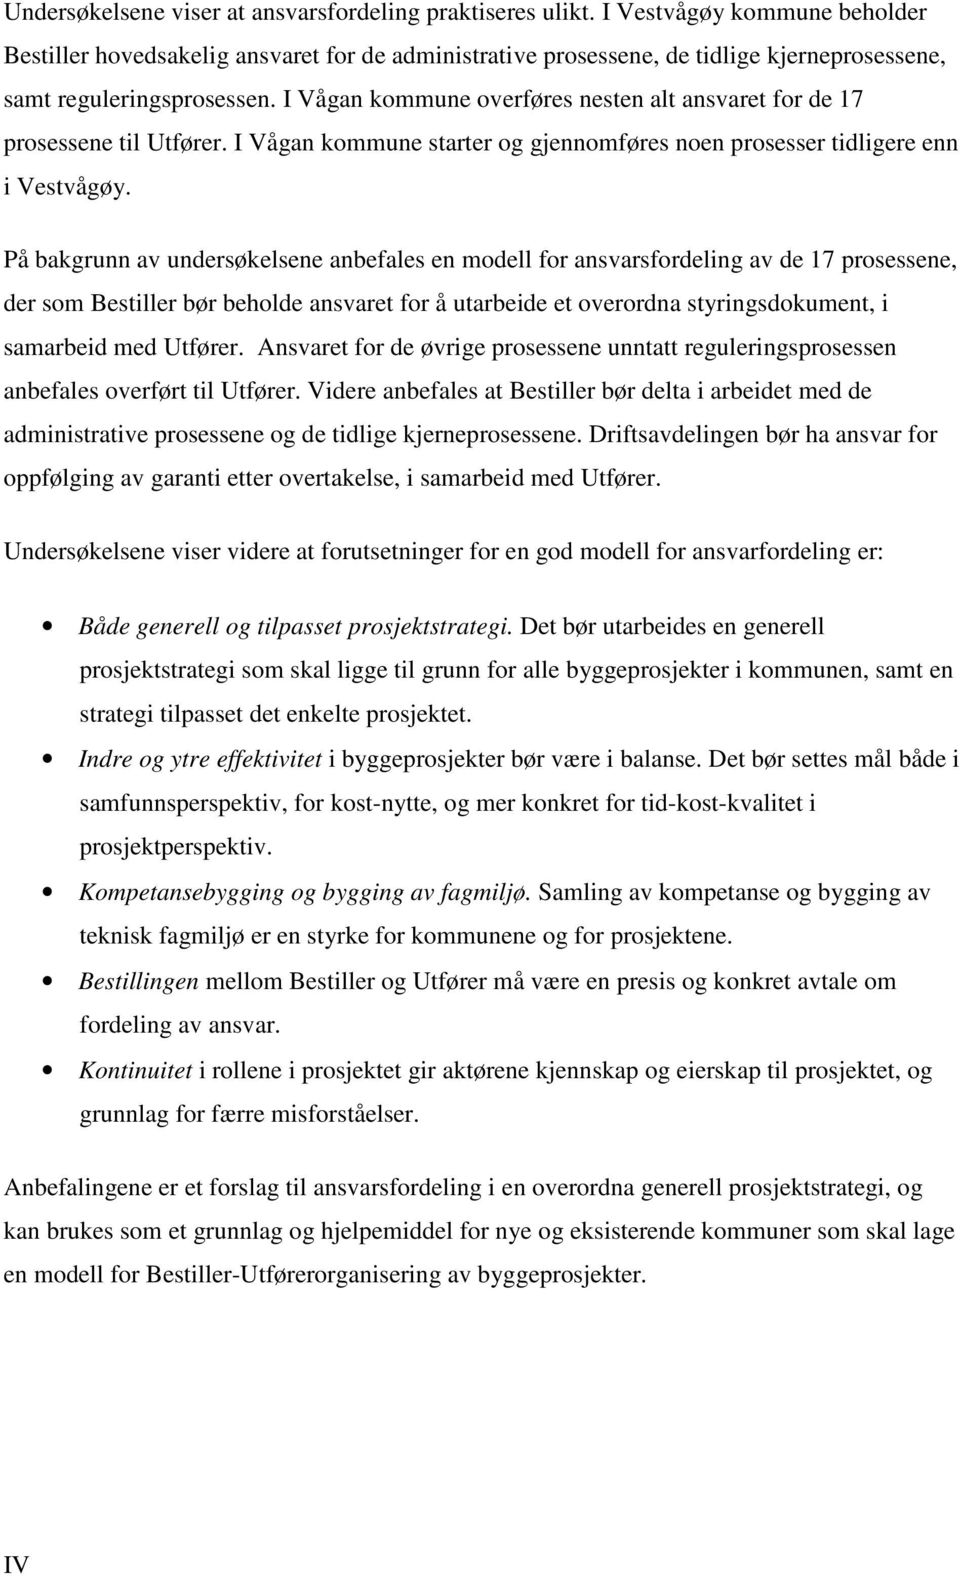 I Vågan kommune overføres nesten alt ansvaret for de 17 prosessene til Utfører. I Vågan kommune starter og gjennomføres noen prosesser tidligere enn i Vestvågøy.